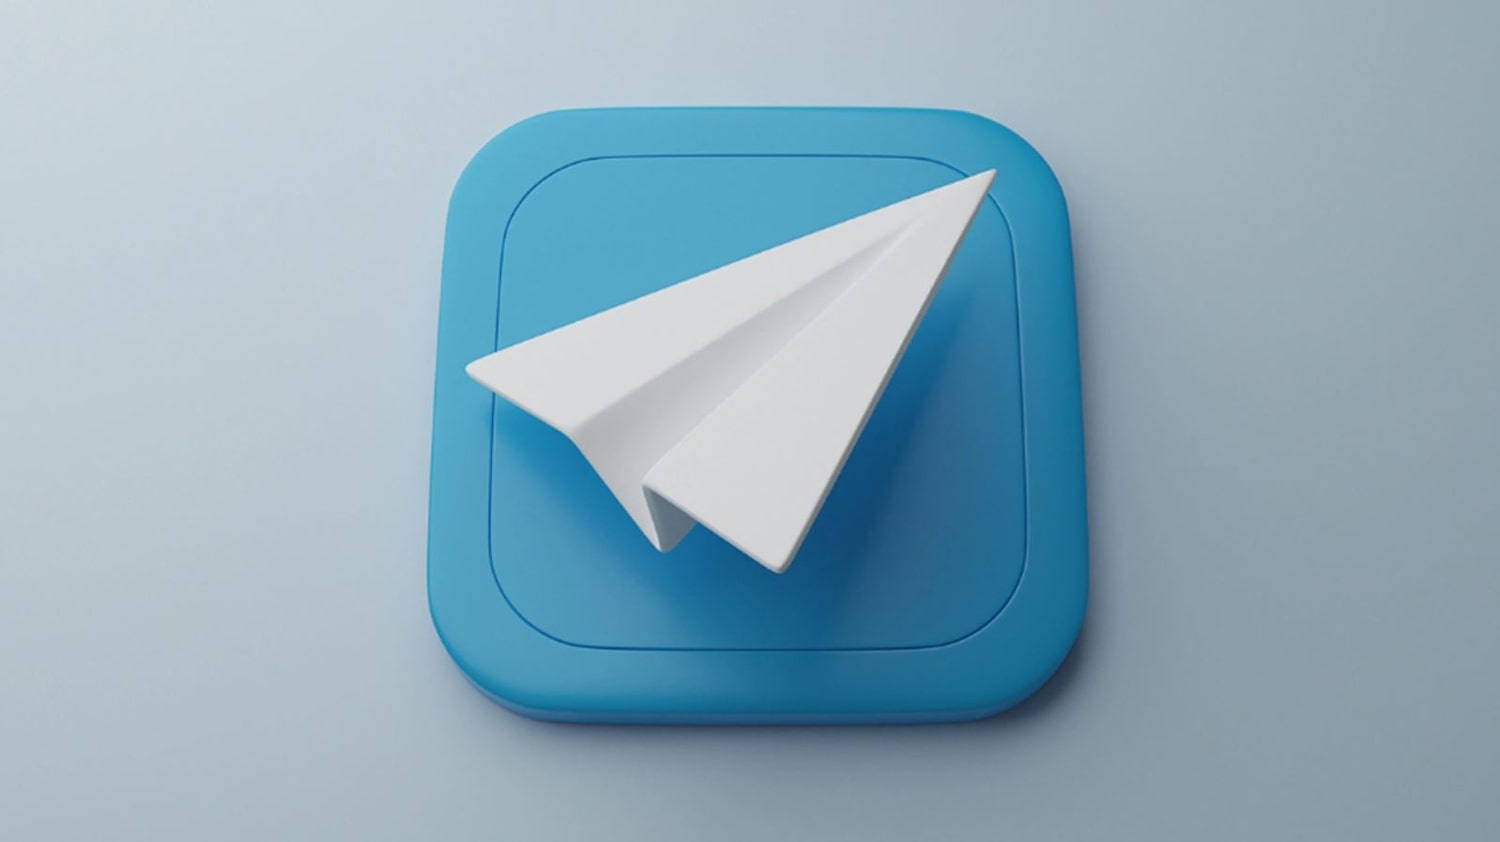 کاربران تلگرام به 500 میلیون نفر رسید